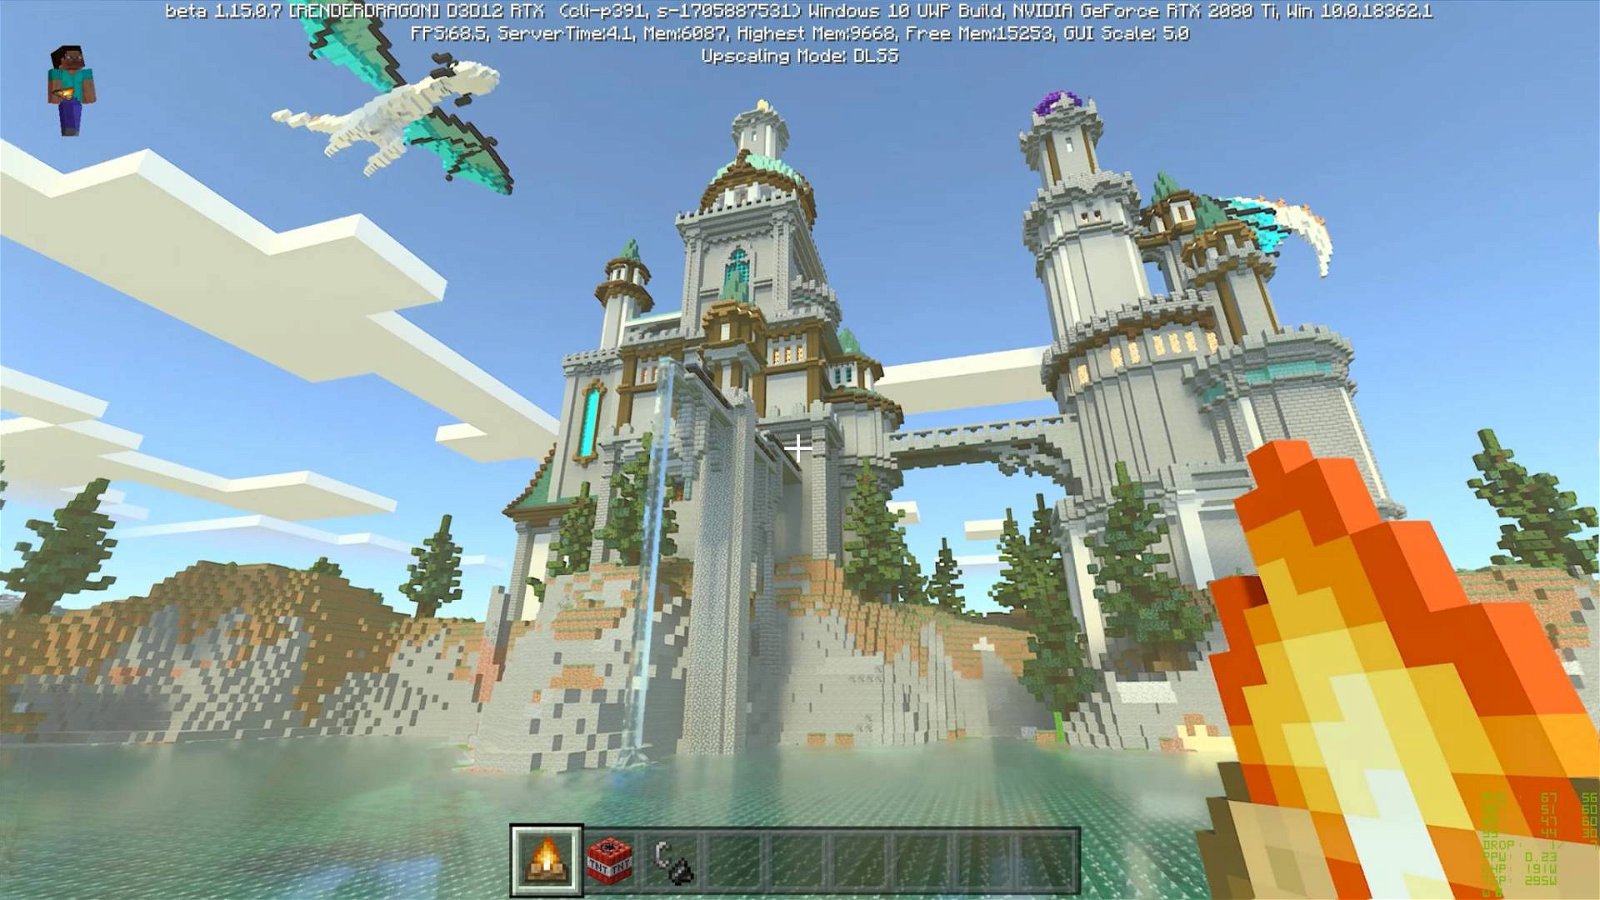 Immagine di Minecraft | Mojang si schiera per la giustizia sociale con un nuovo progetto